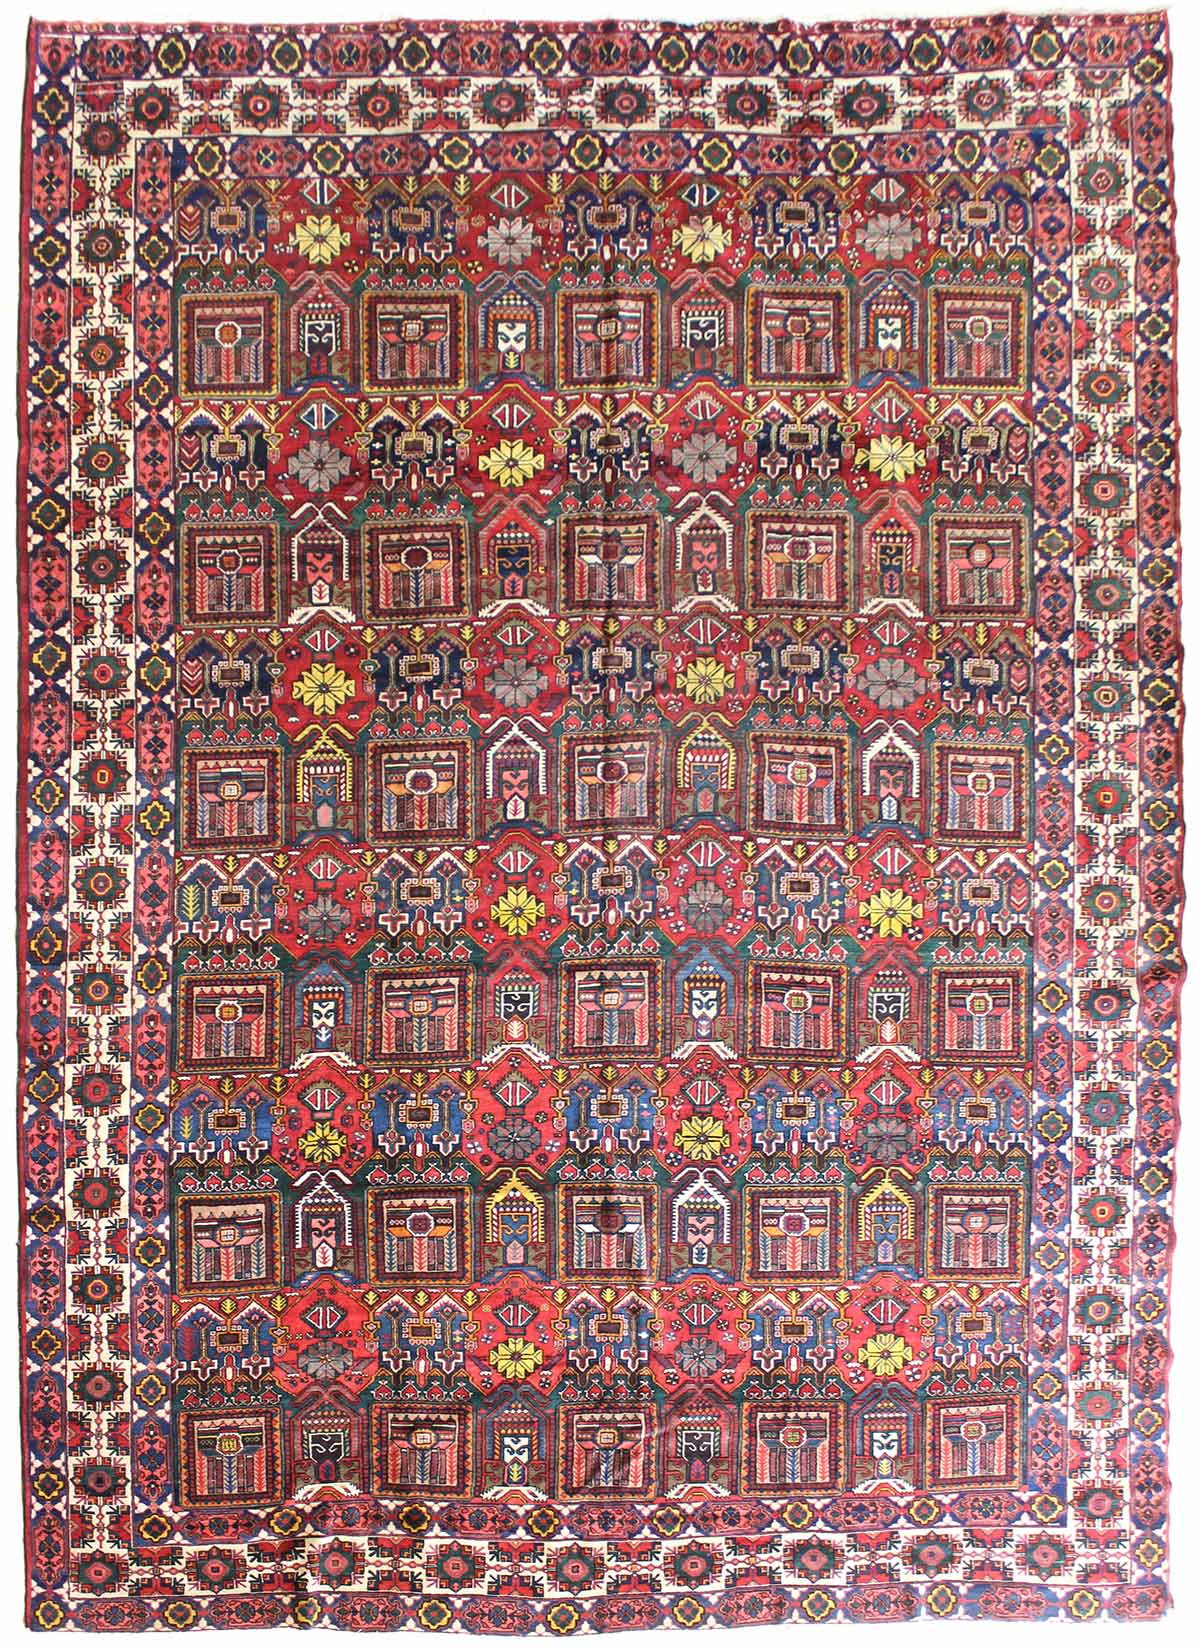 Antique Bakhtiari Handwoven Tribal Rug